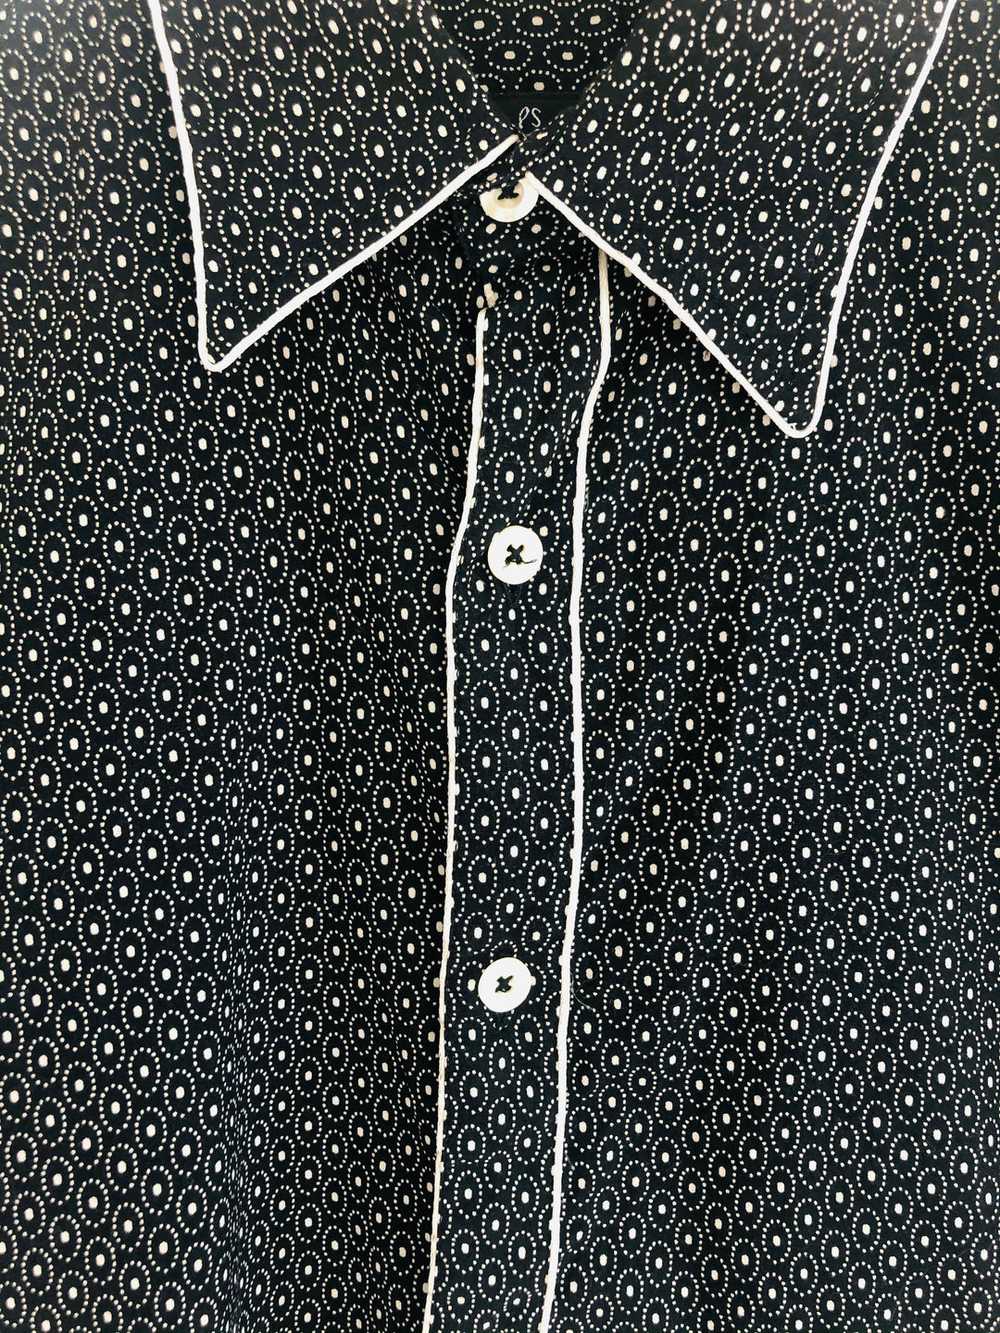 Paul Smith Polka Dot Shirt - image 2